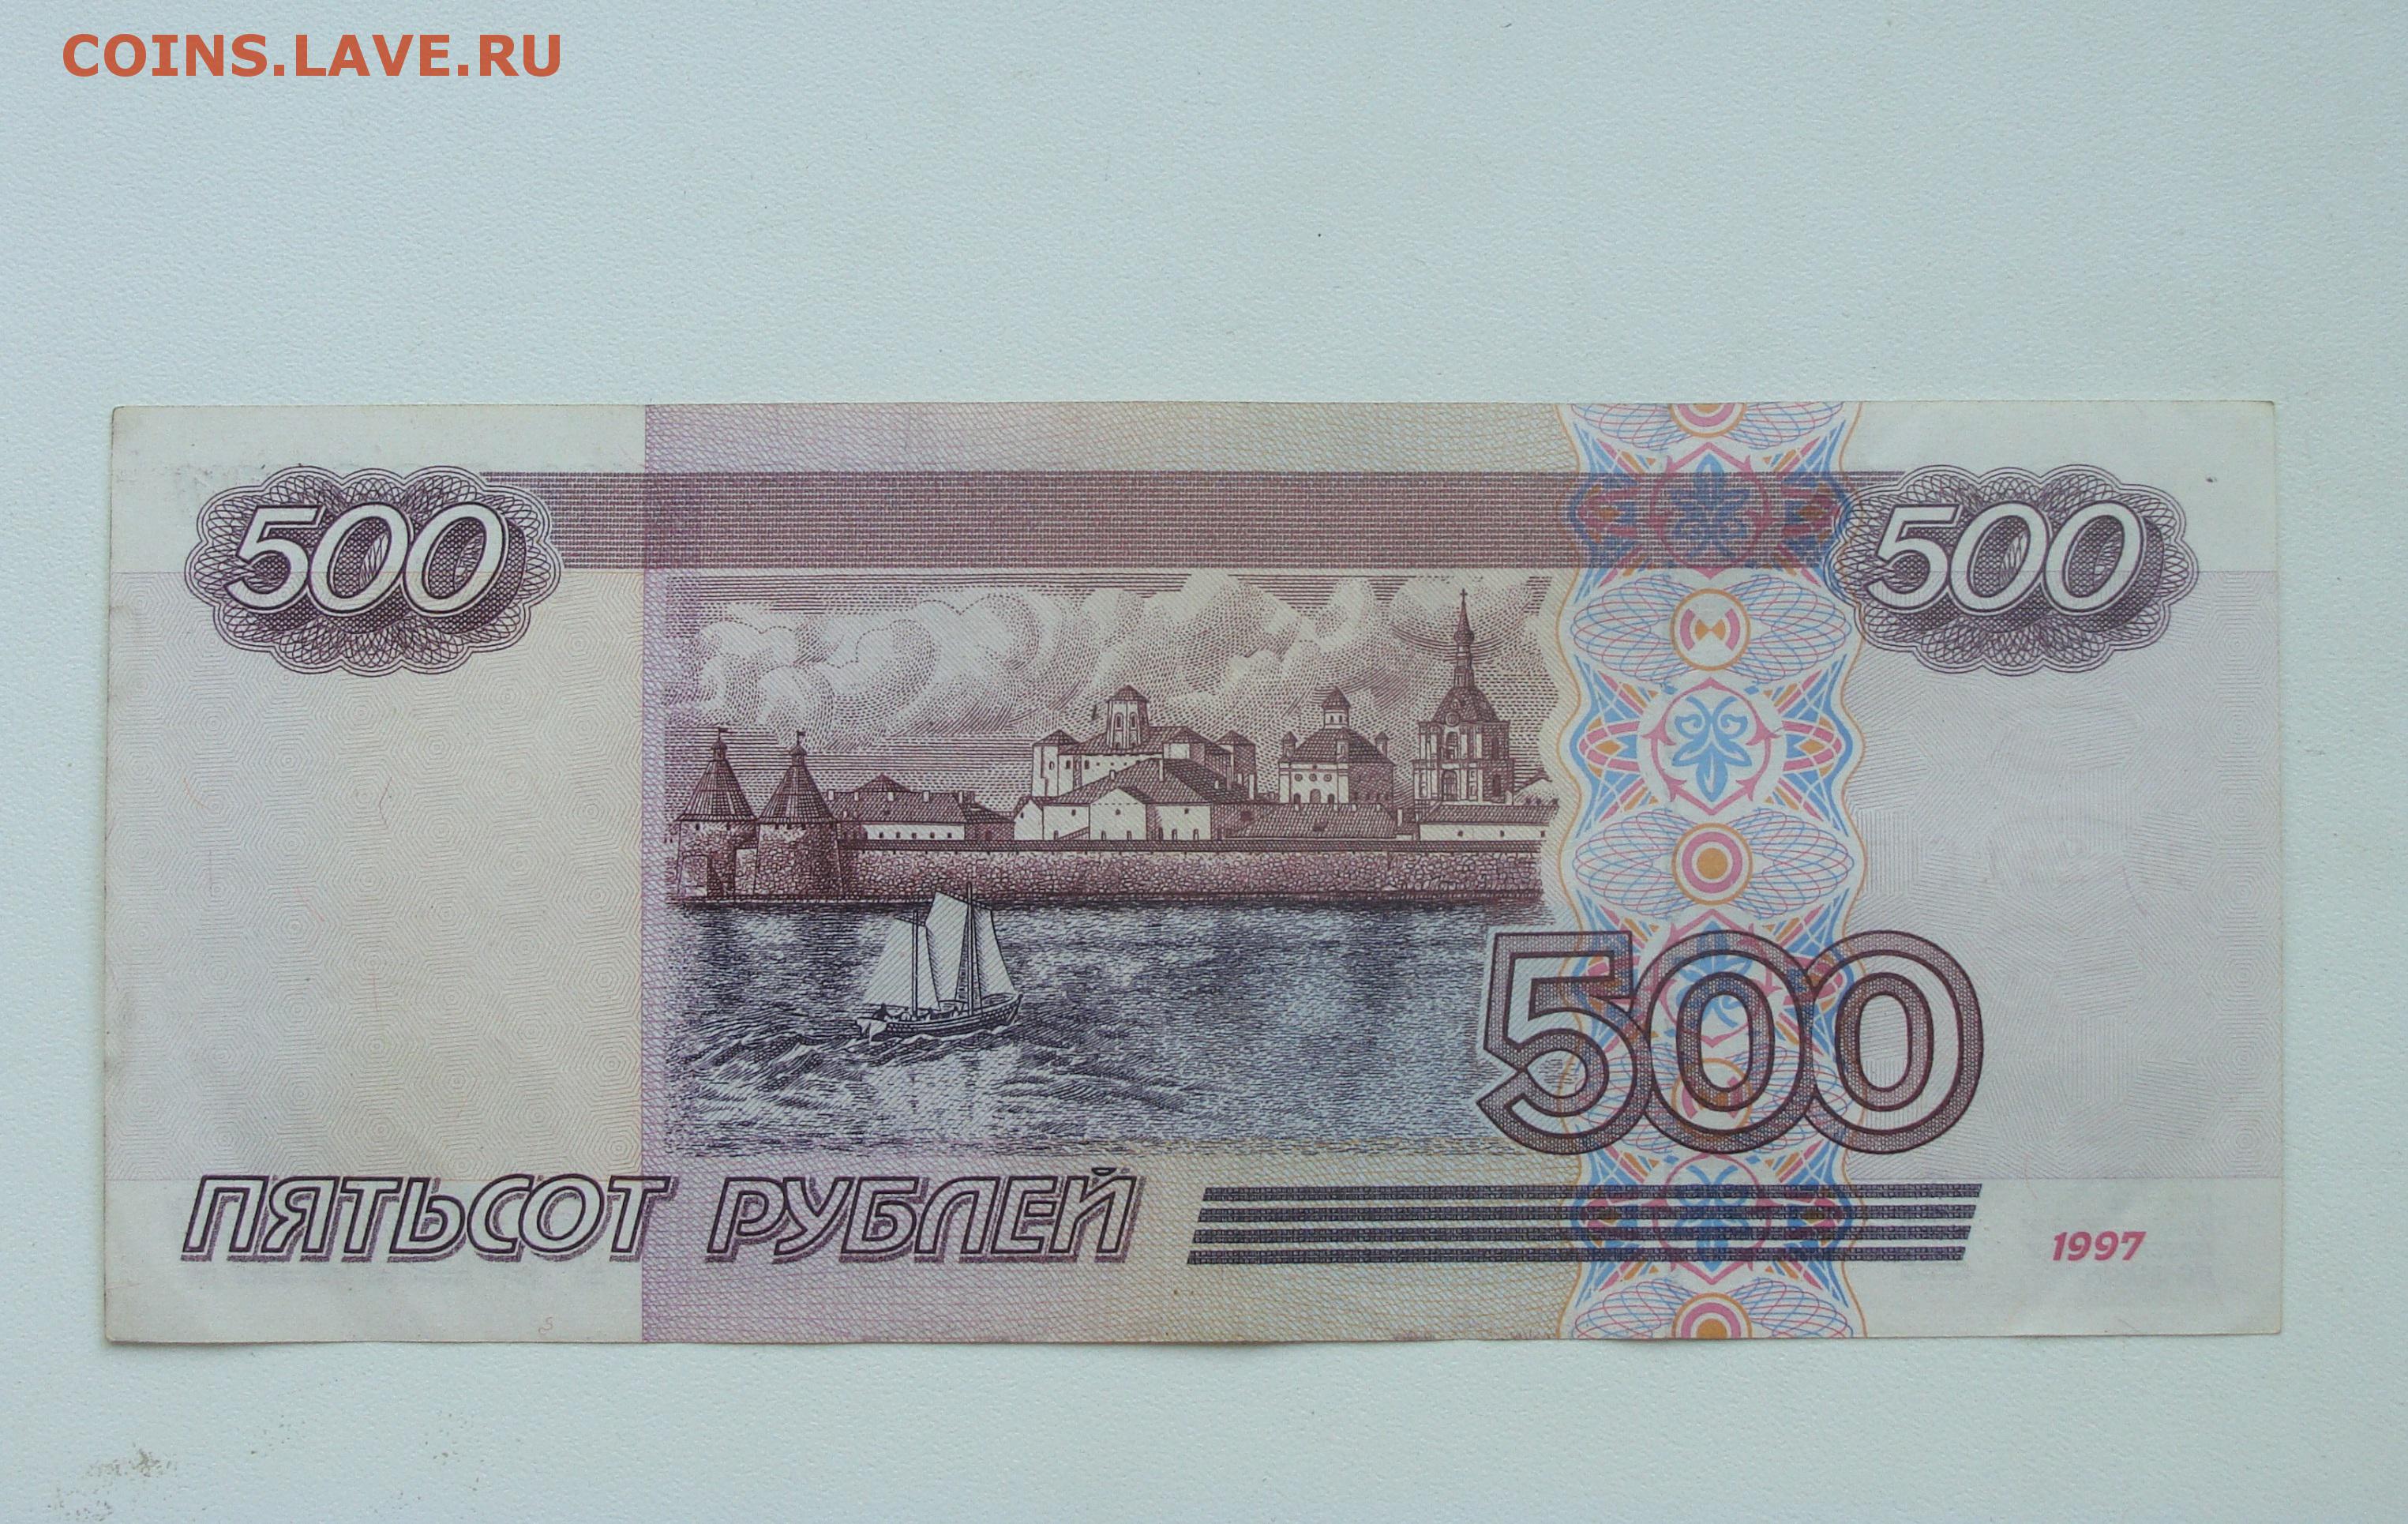 Н 500 рублей. 500 Рублей. 500 Рублей 1997 г. модификация 2001 г. 500 Модификация 2001. 500 Рублей 1997 г. модификация 2001 г. до 06.03.